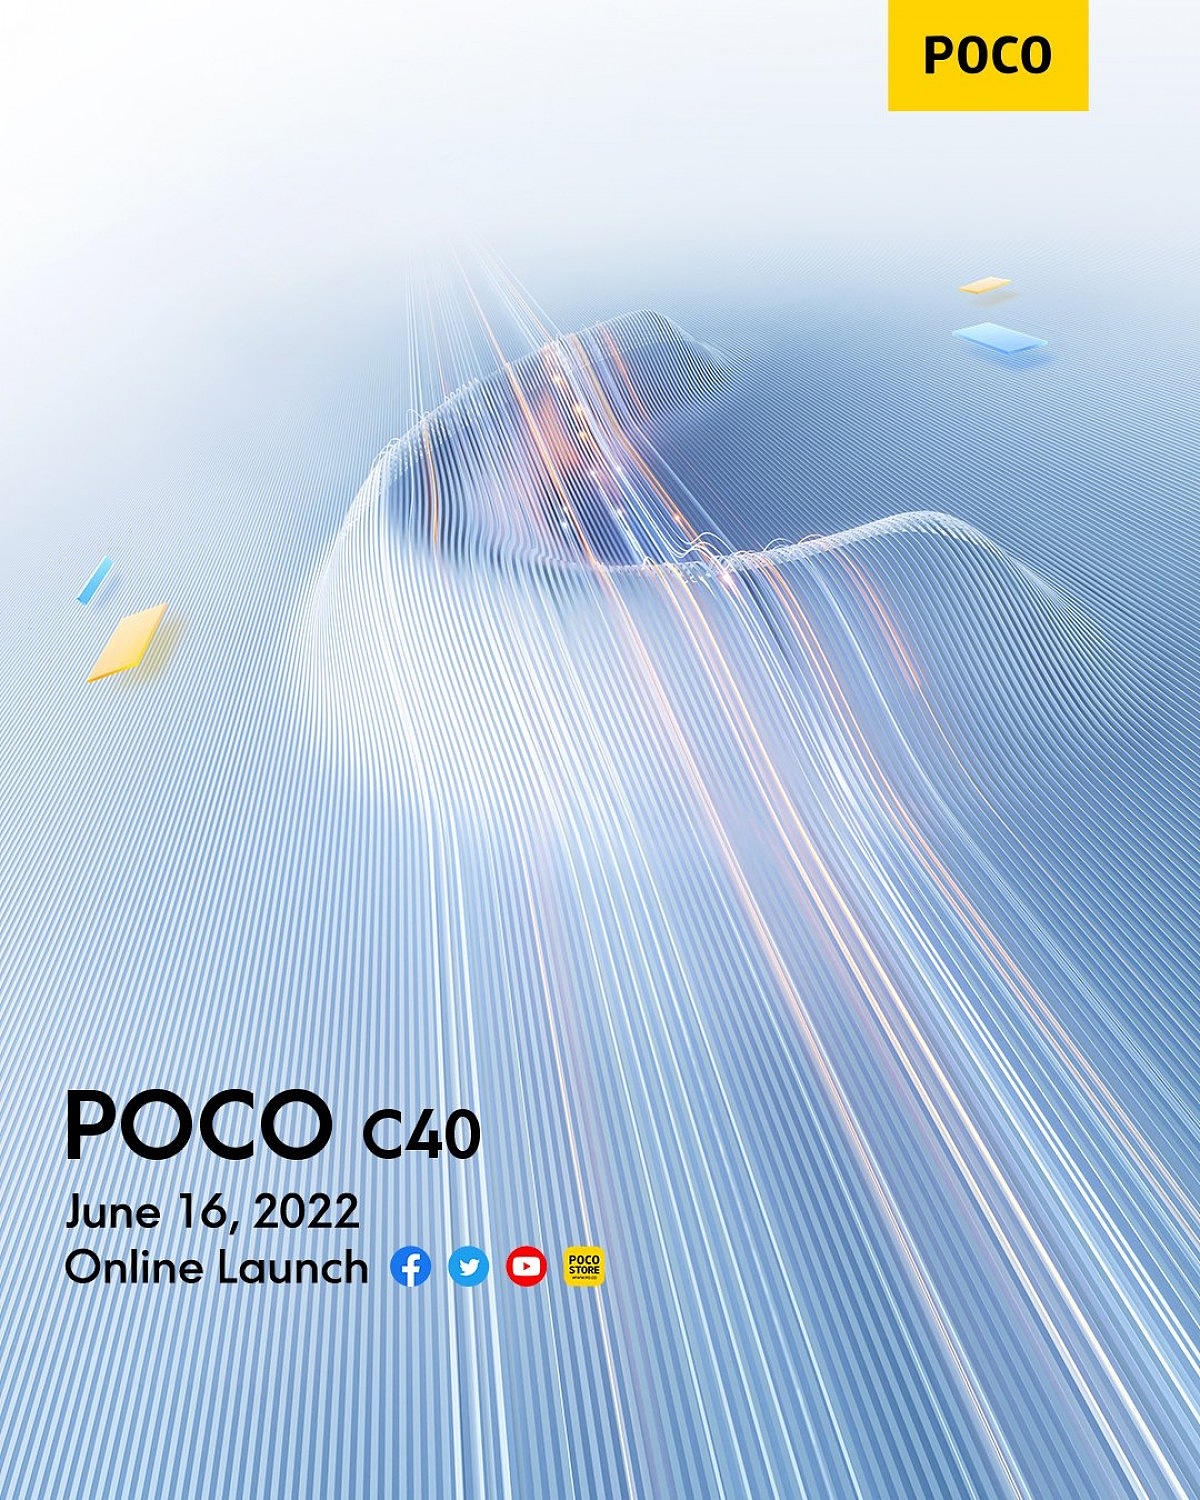 小米 POCO C40 将于 6 月 16 日发布